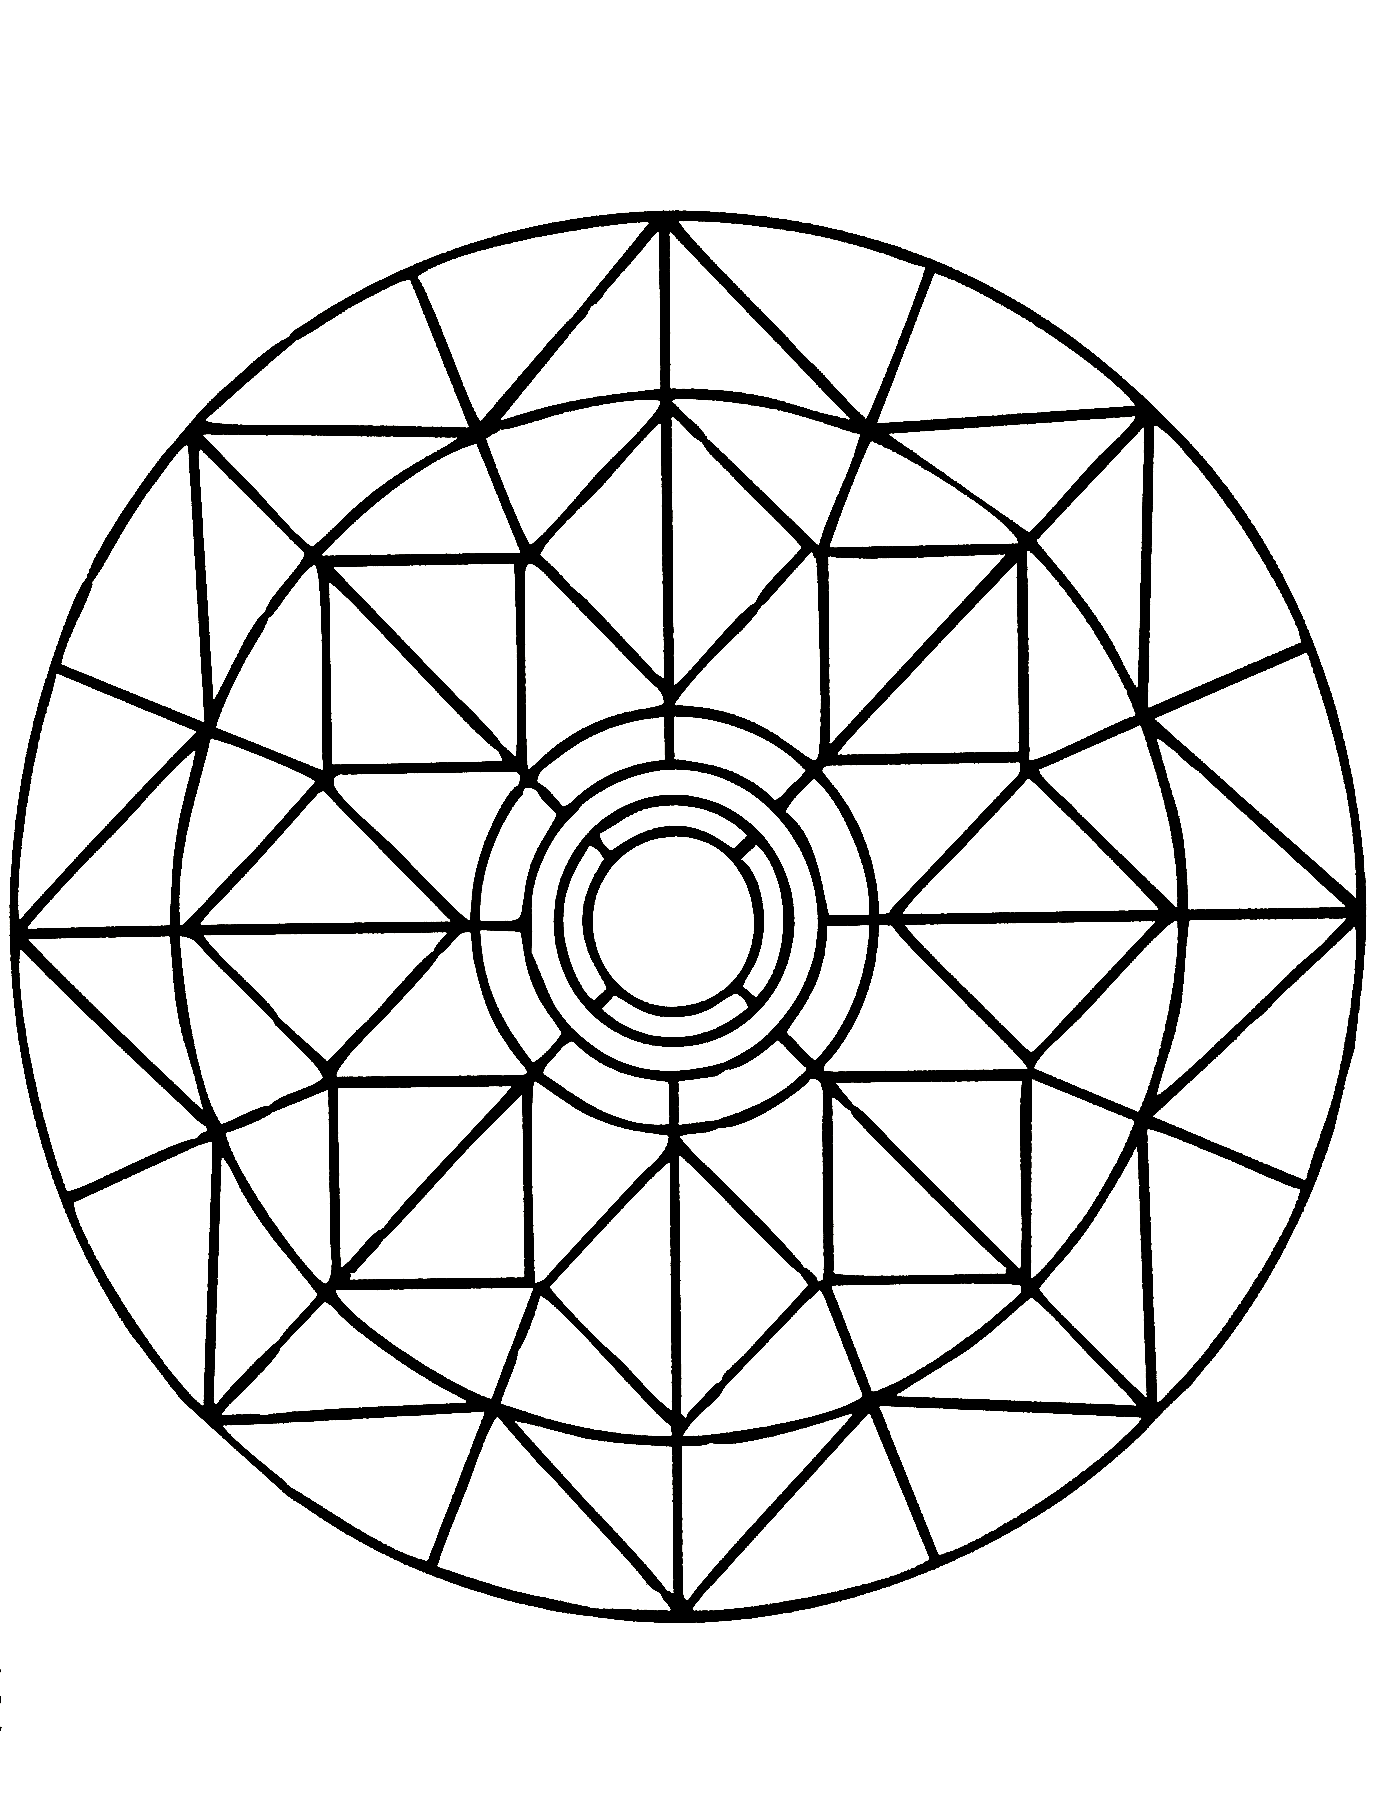 Los geht's mit Minuten der Entspannung mit diesem wunderschönen Mandala, das aus sehr symmetrischen, geometrischen und harmonischen Formen besteht.